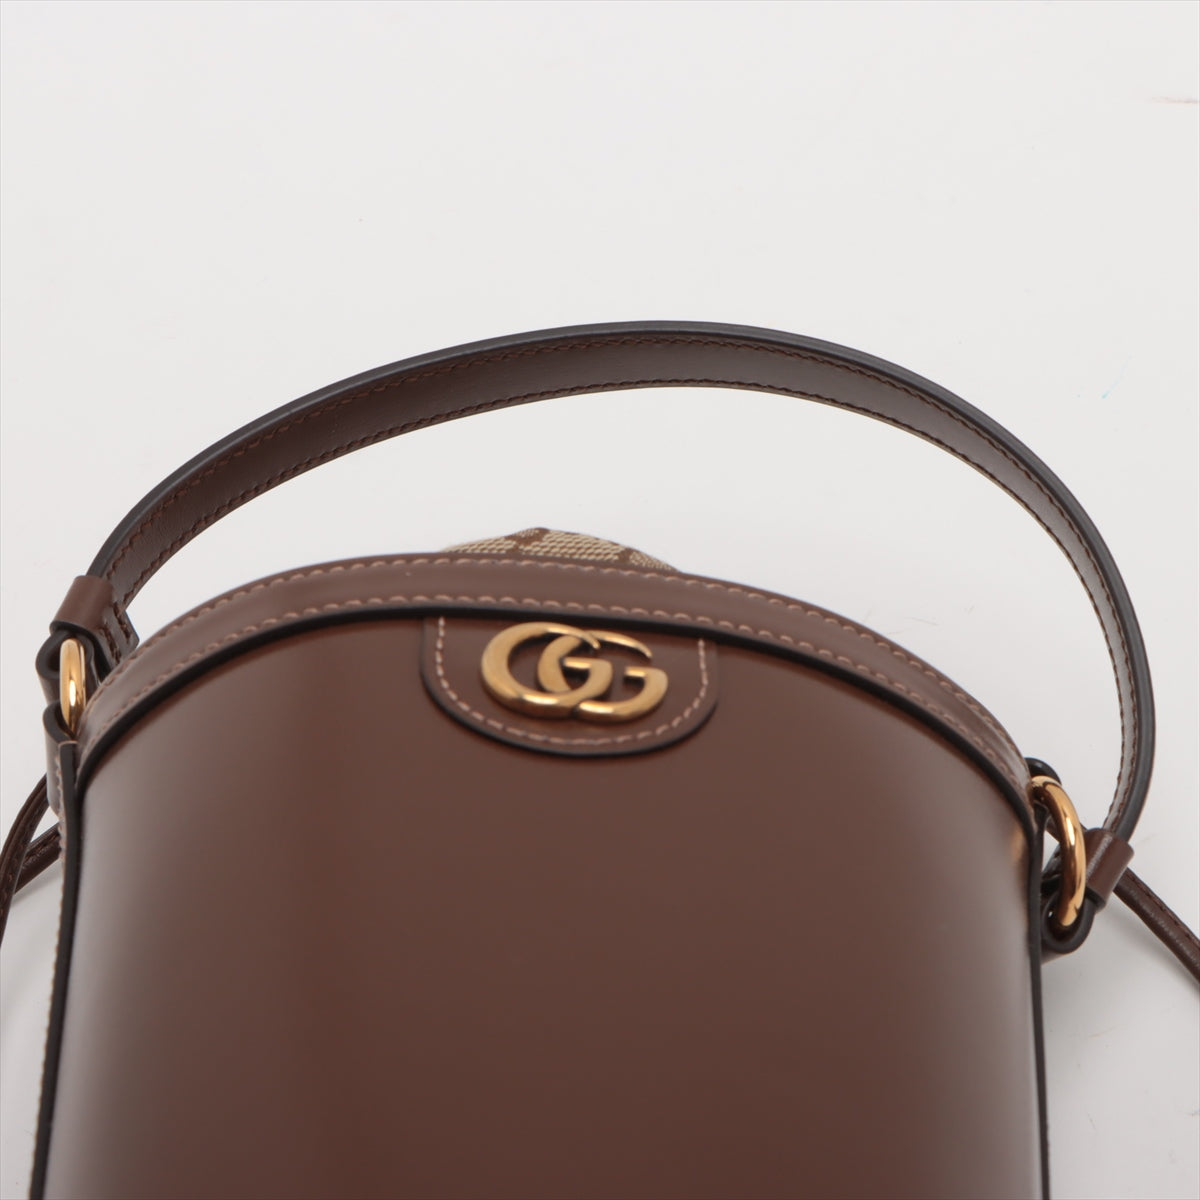 Gucci GG canvas fice handbag brown 760201